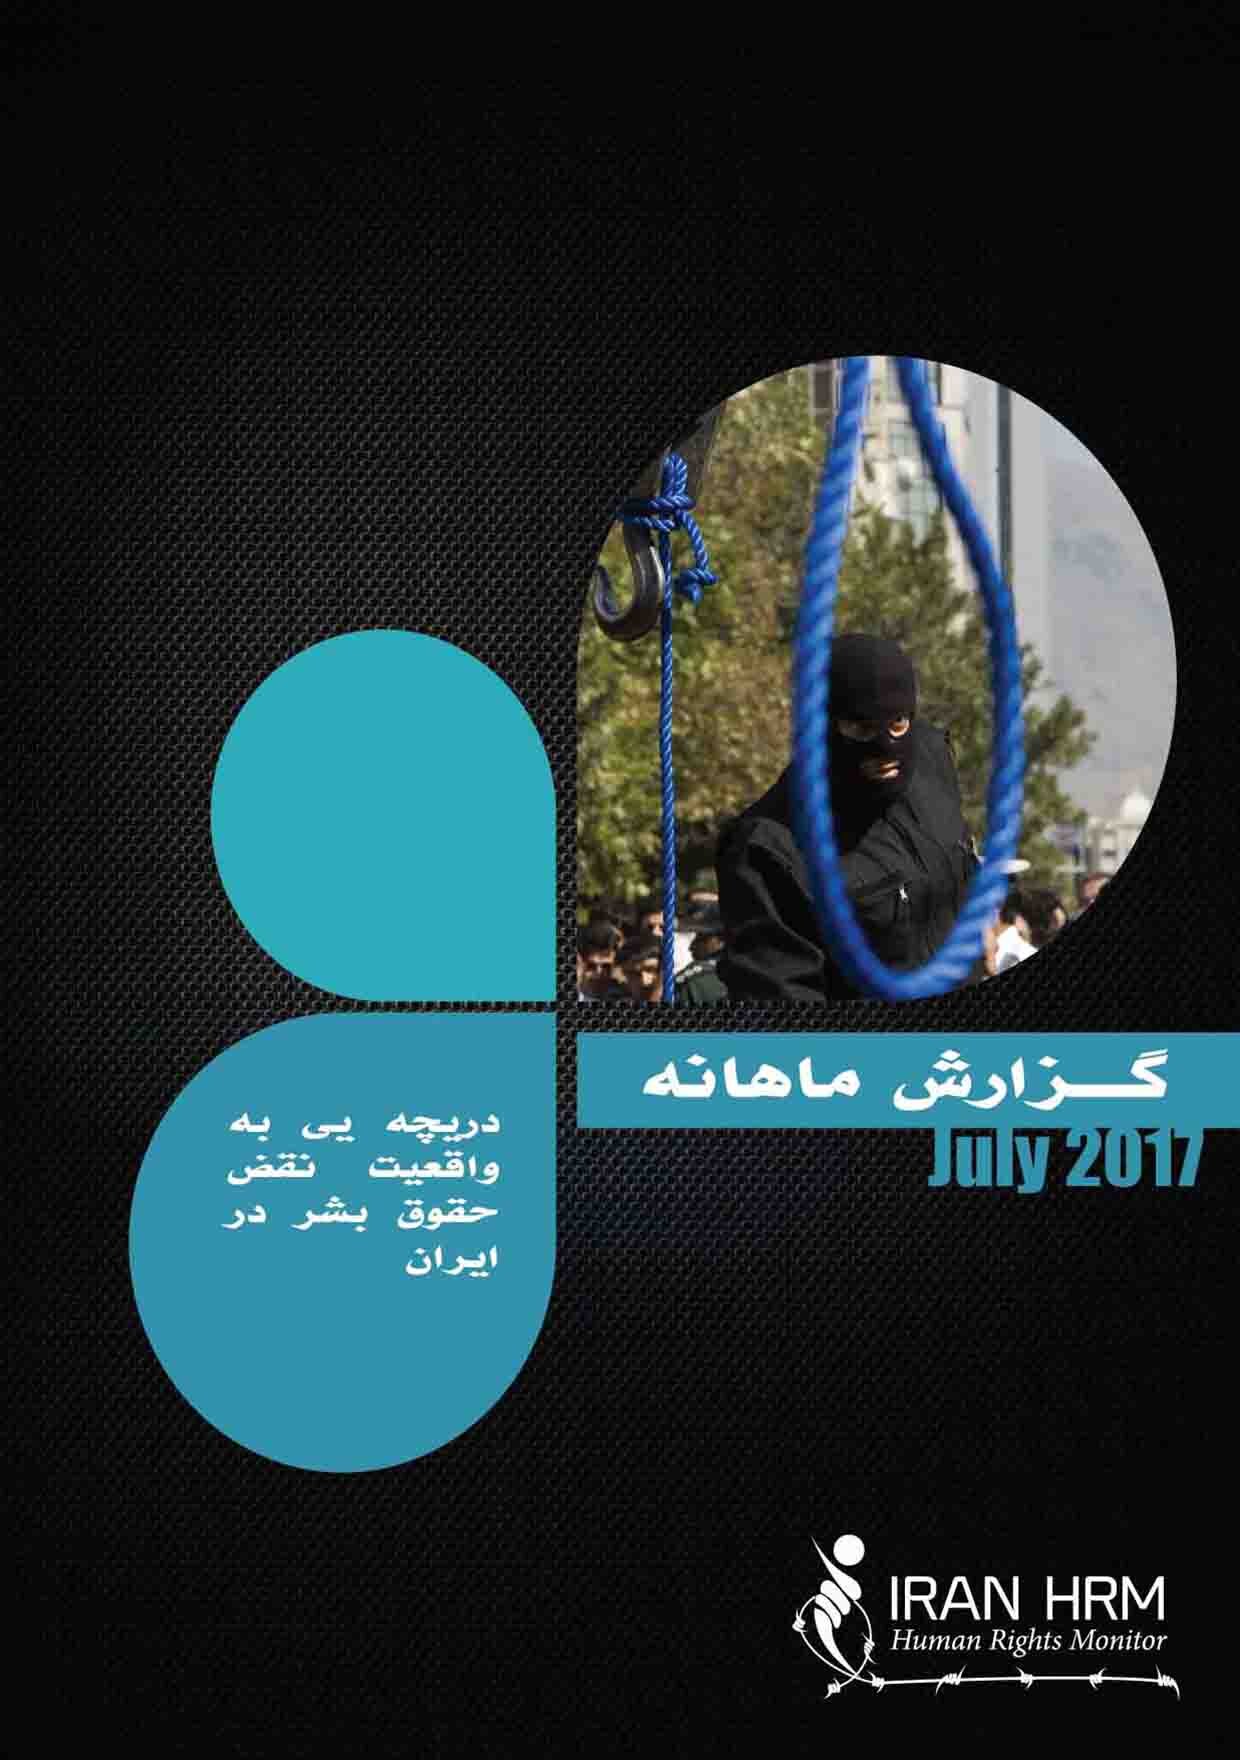 موج فزآينده اعدام ها در ايران در ماه جولاي